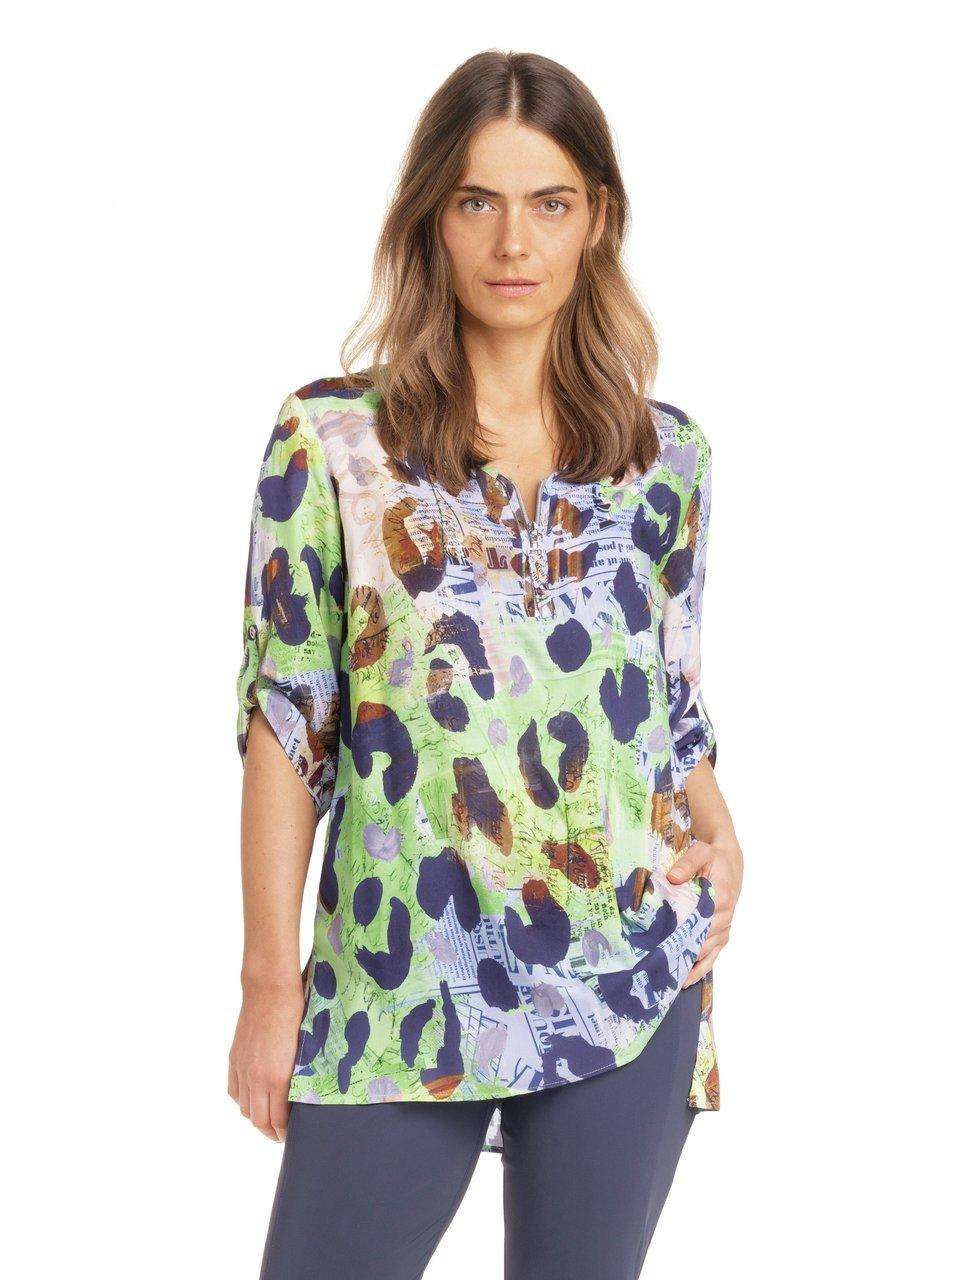 блузка с леопардовым принтом